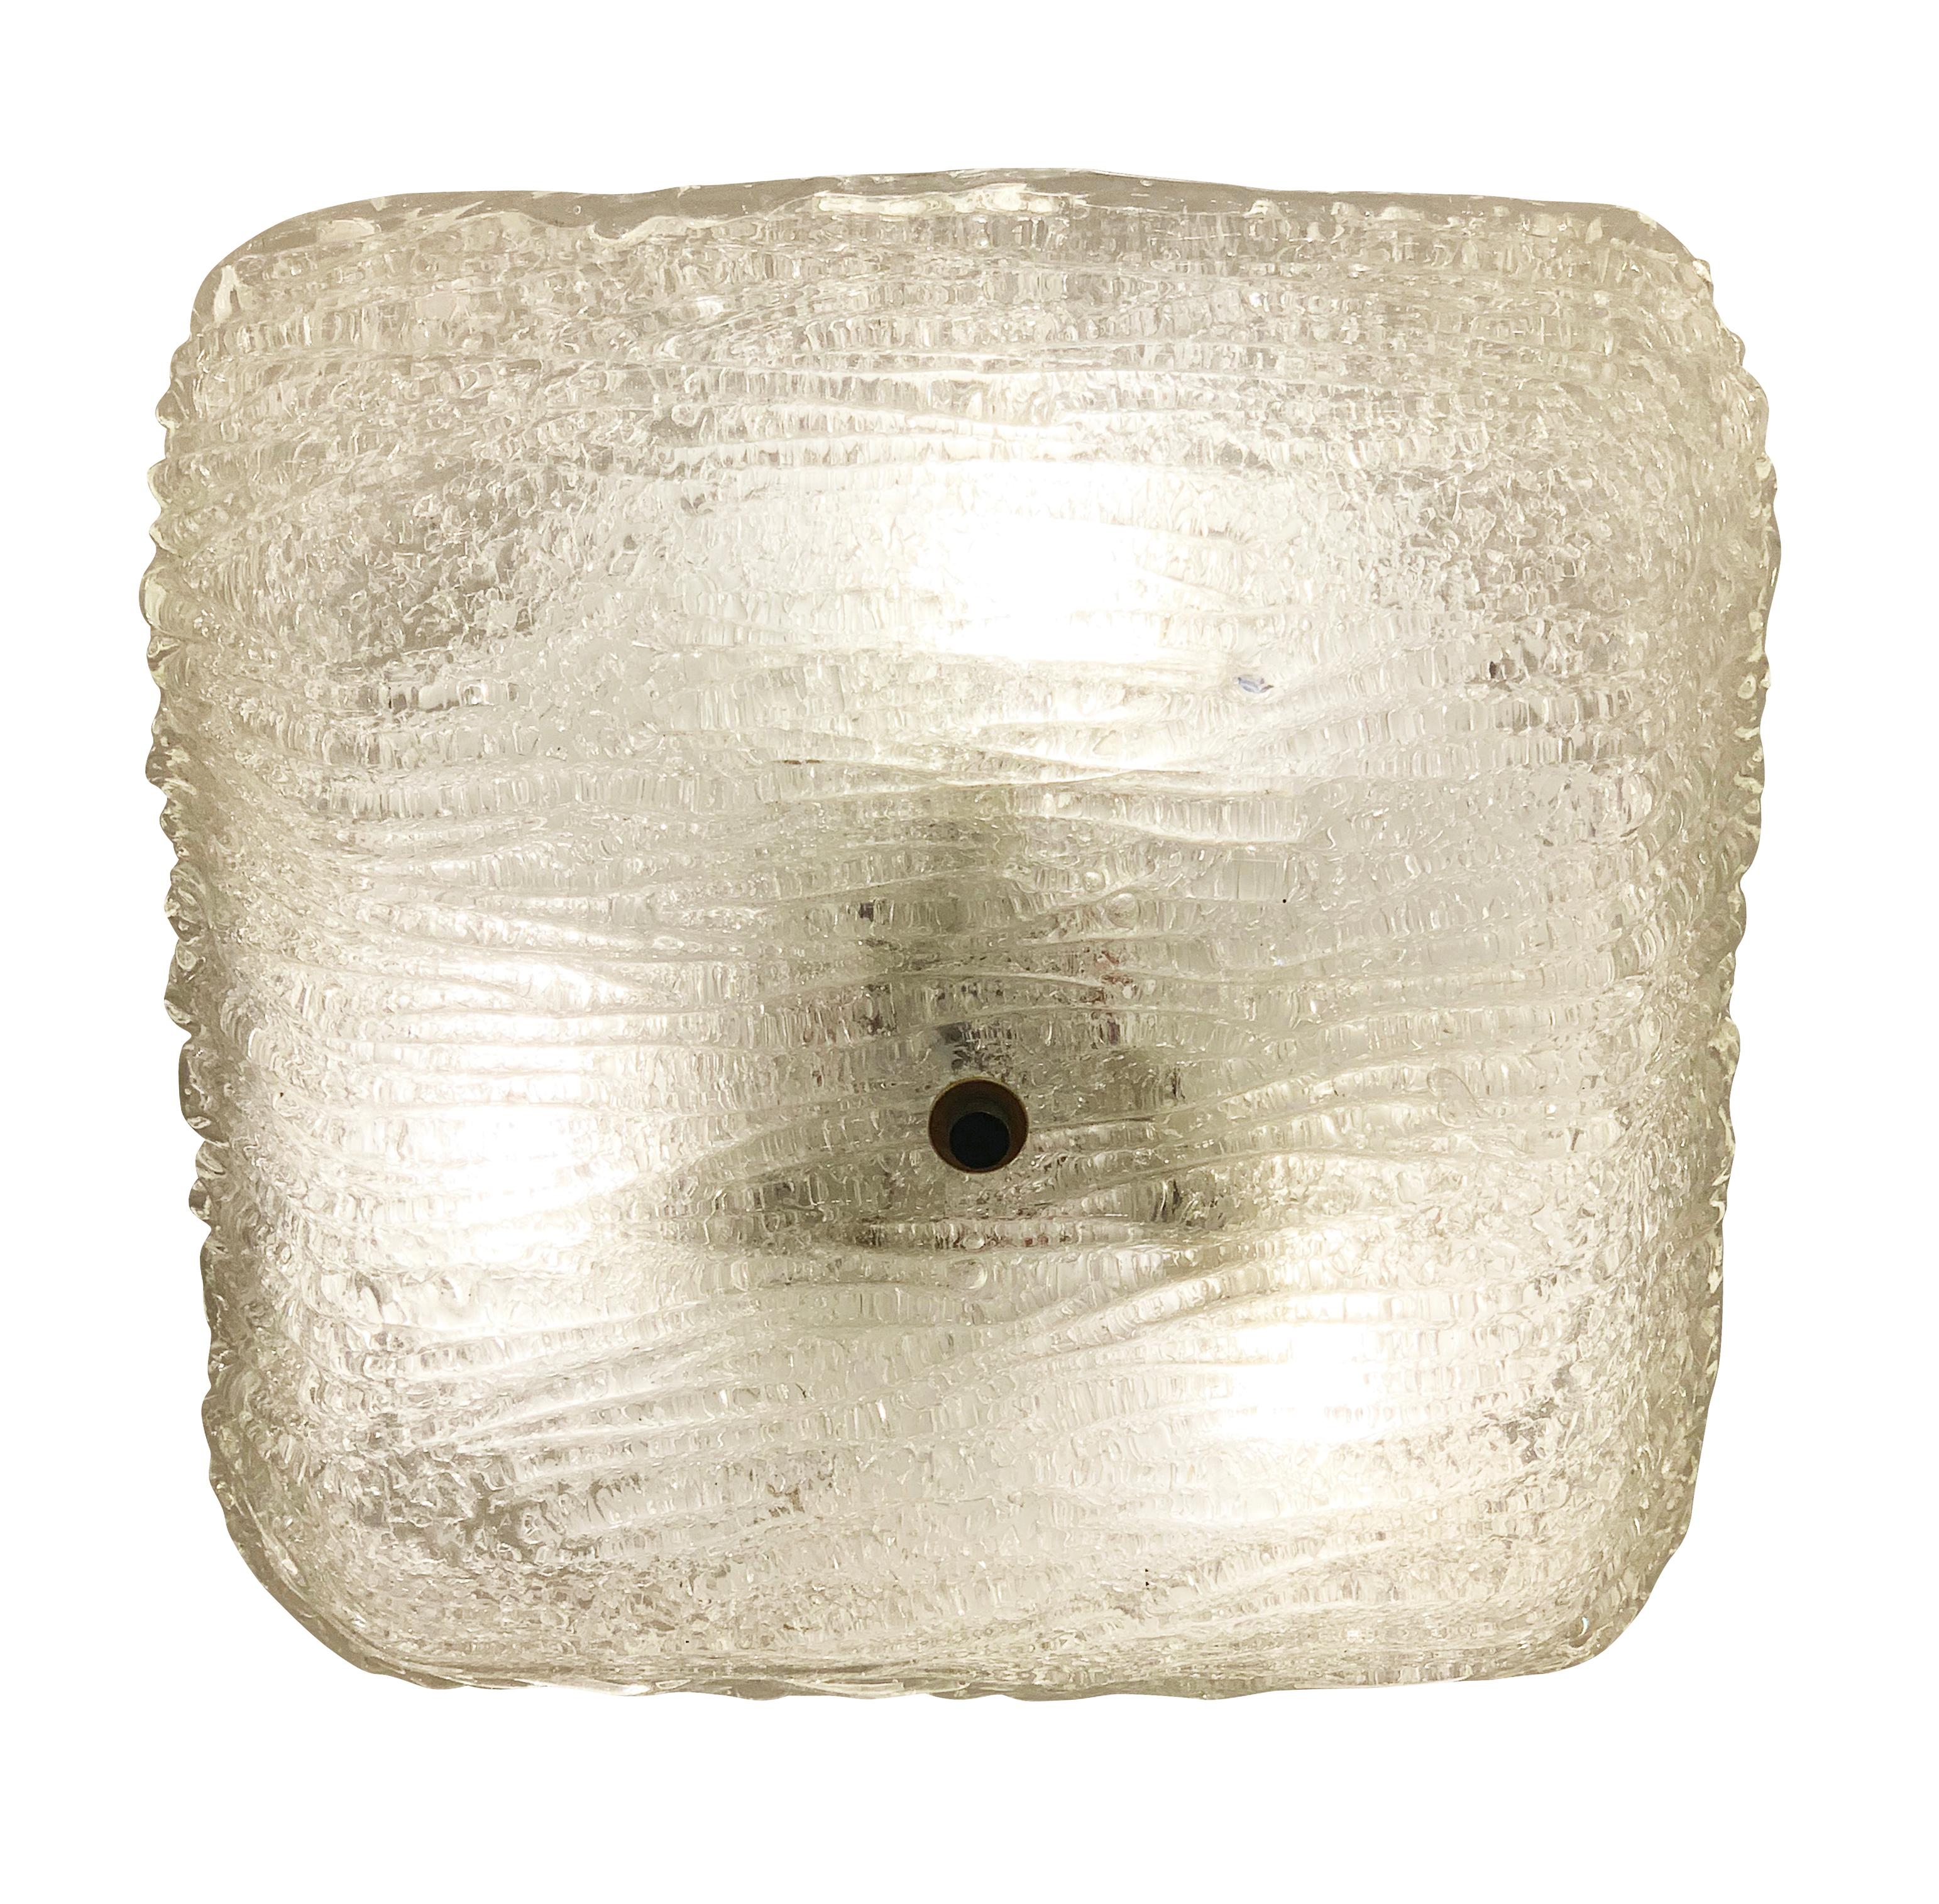 Quadratische italienische Mid-Century-Einbauleuchte aus strukturiertem Murano-Glas. Fasst drei Lichtquellen.

Zustand: Ausgezeichneter Vintage-Zustand, leichte Abnutzungserscheinungen durch Alter und Gebrauch.

Breite: 13